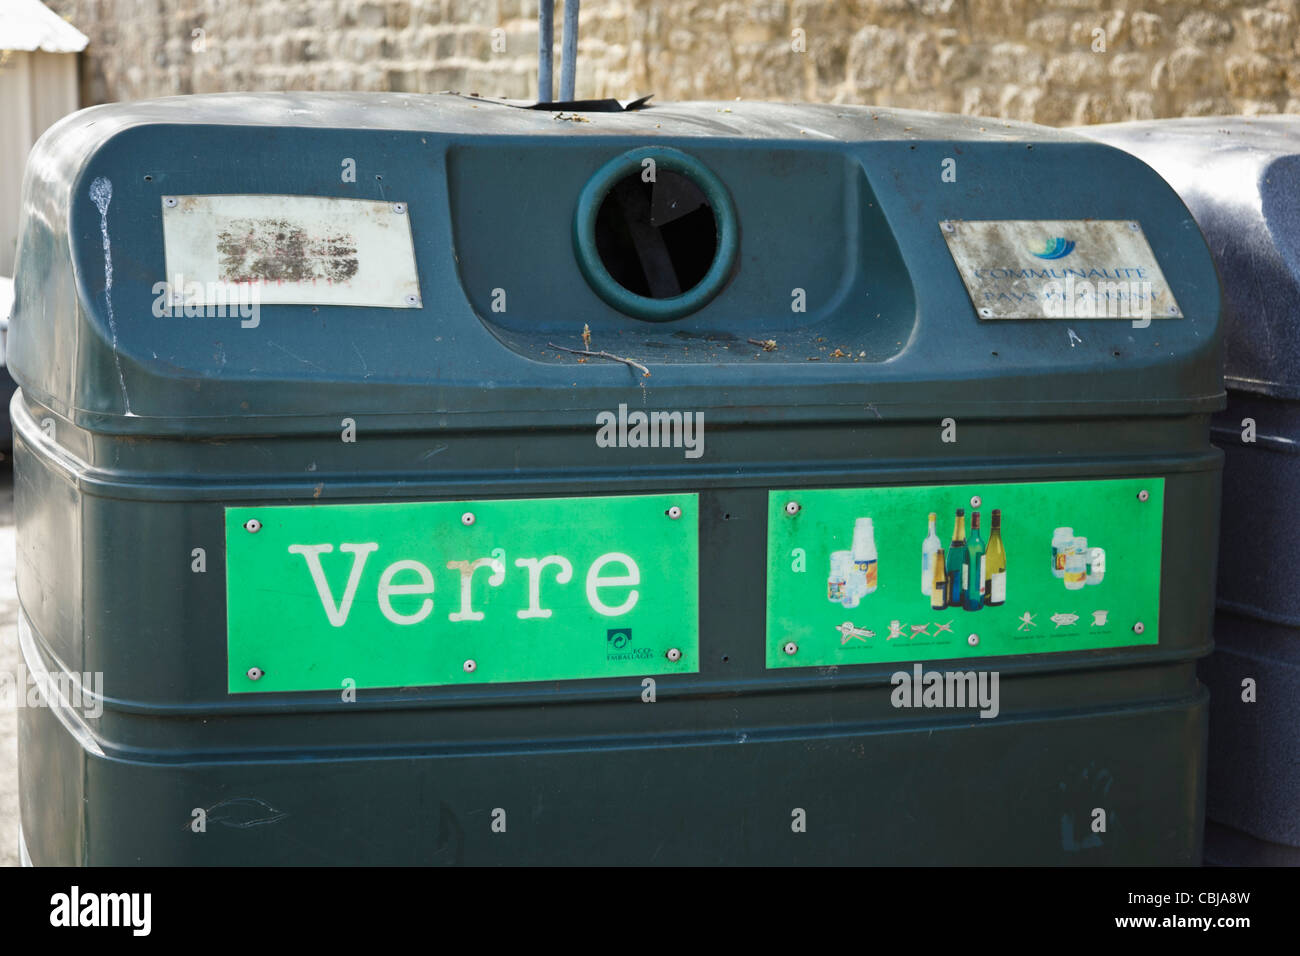 Bac de recyclage pour le verre, France Photo Stock - Alamy